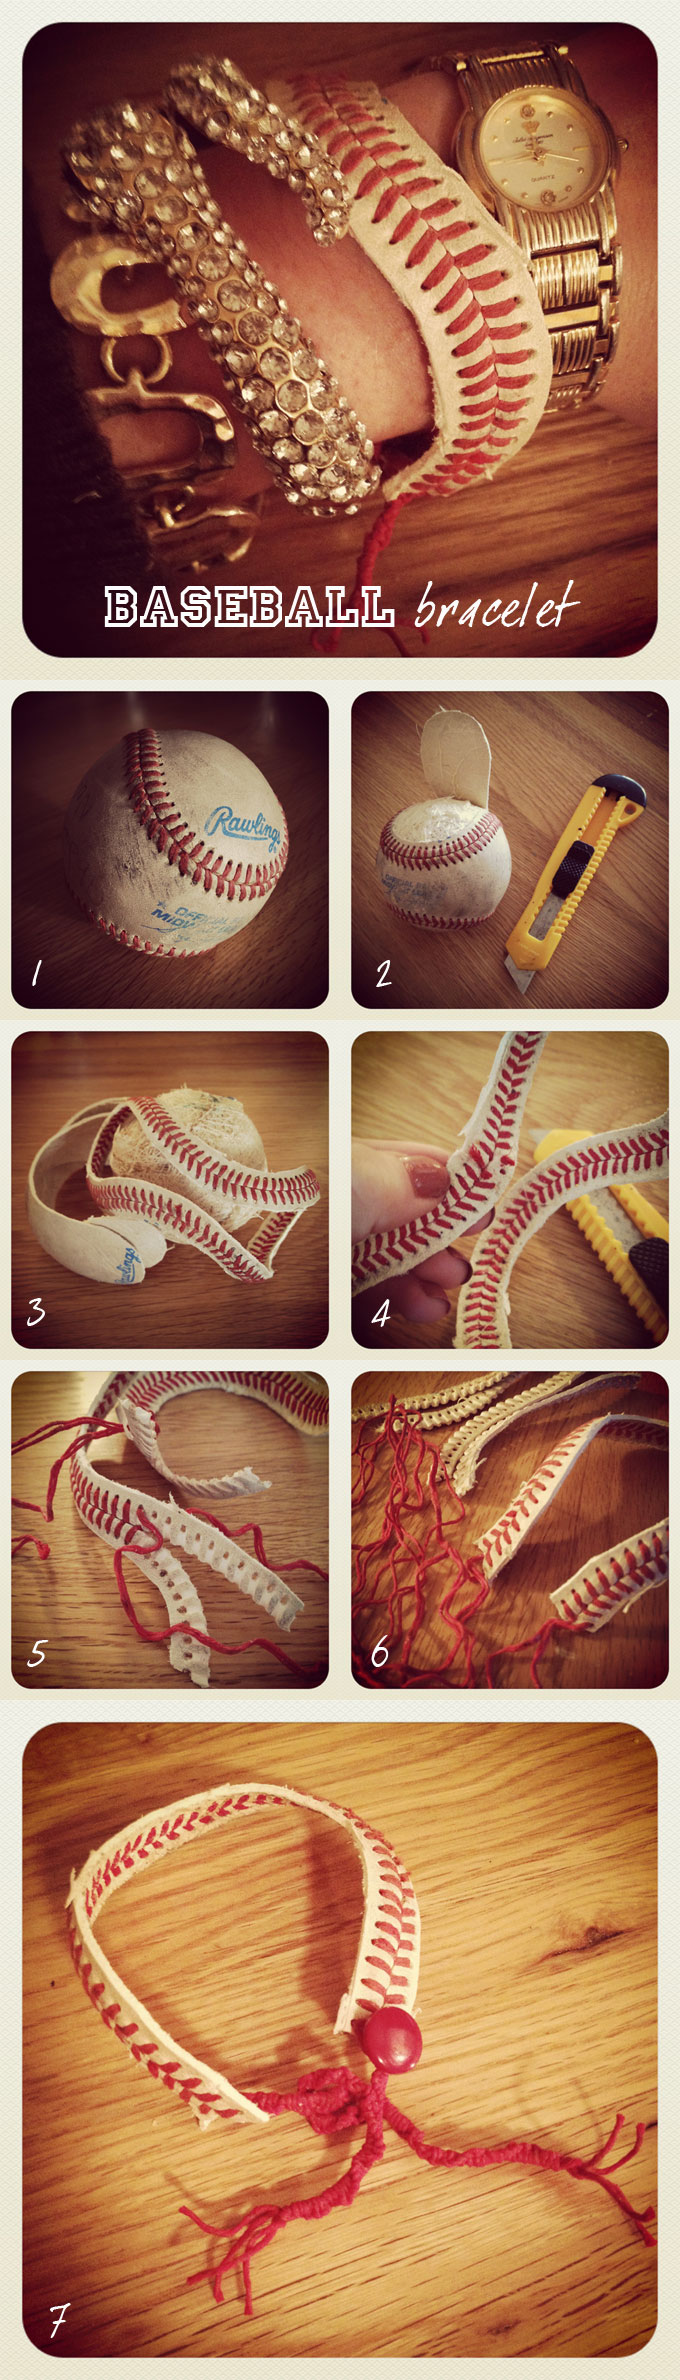 baseball-bracelet680